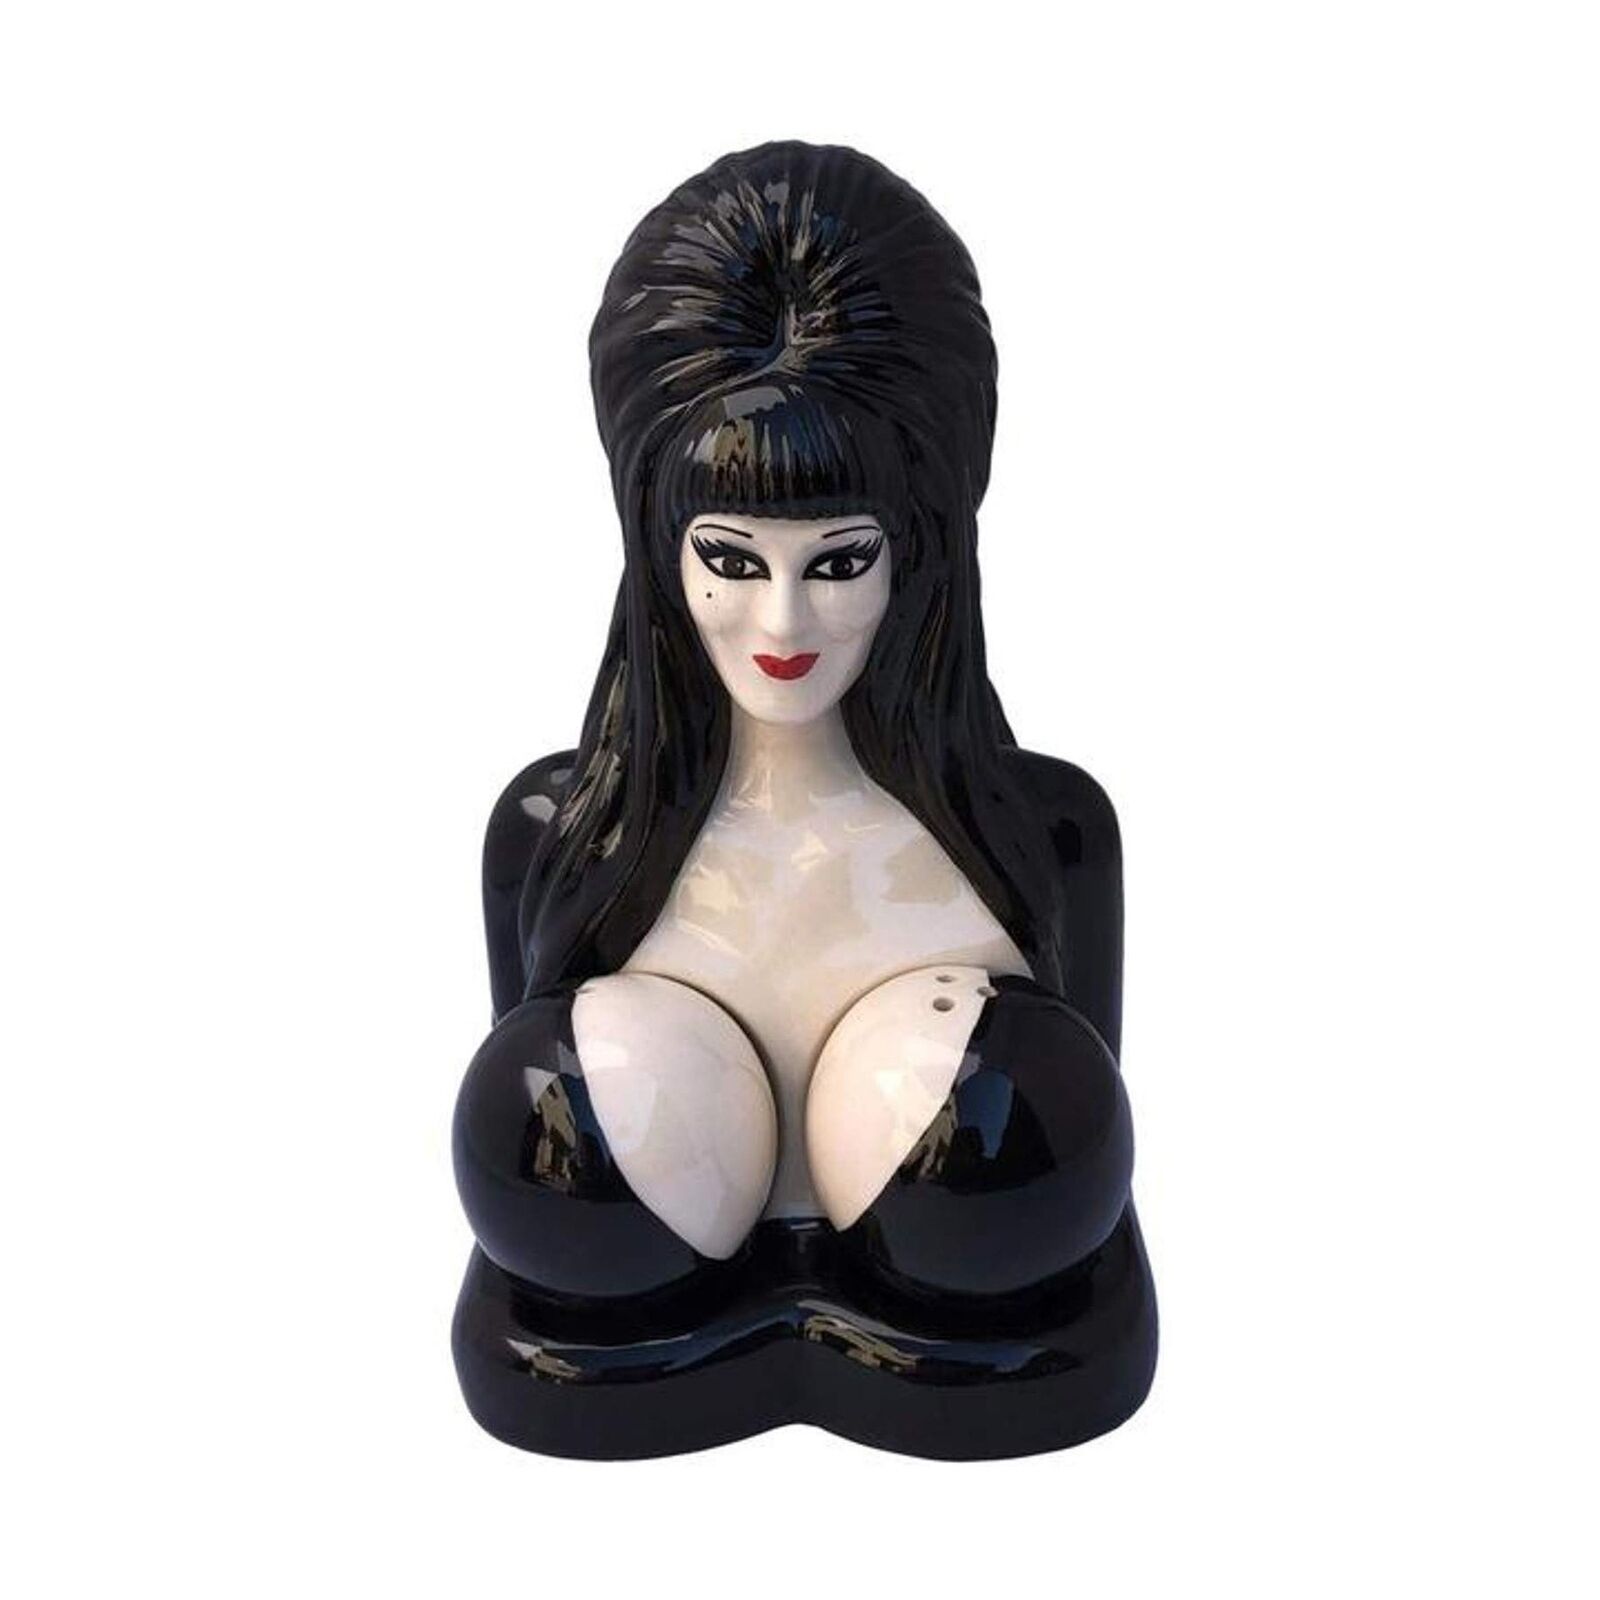 Official Elvira Mistress of the Dark salt n pepper shaker\'s